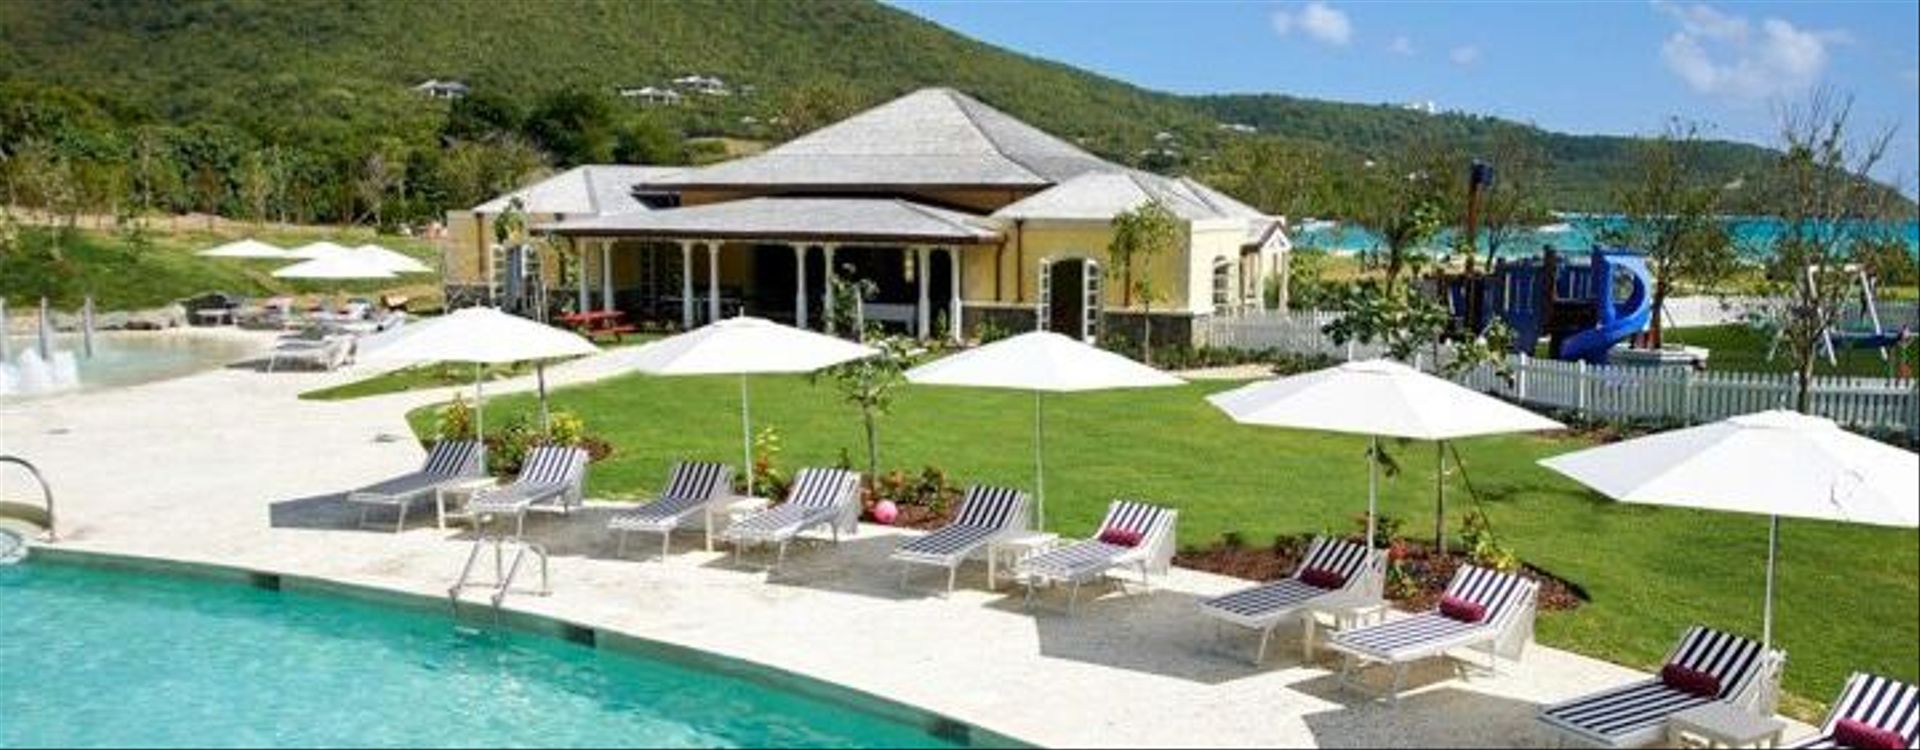 canouan-estate-resort-pool-2.jpg